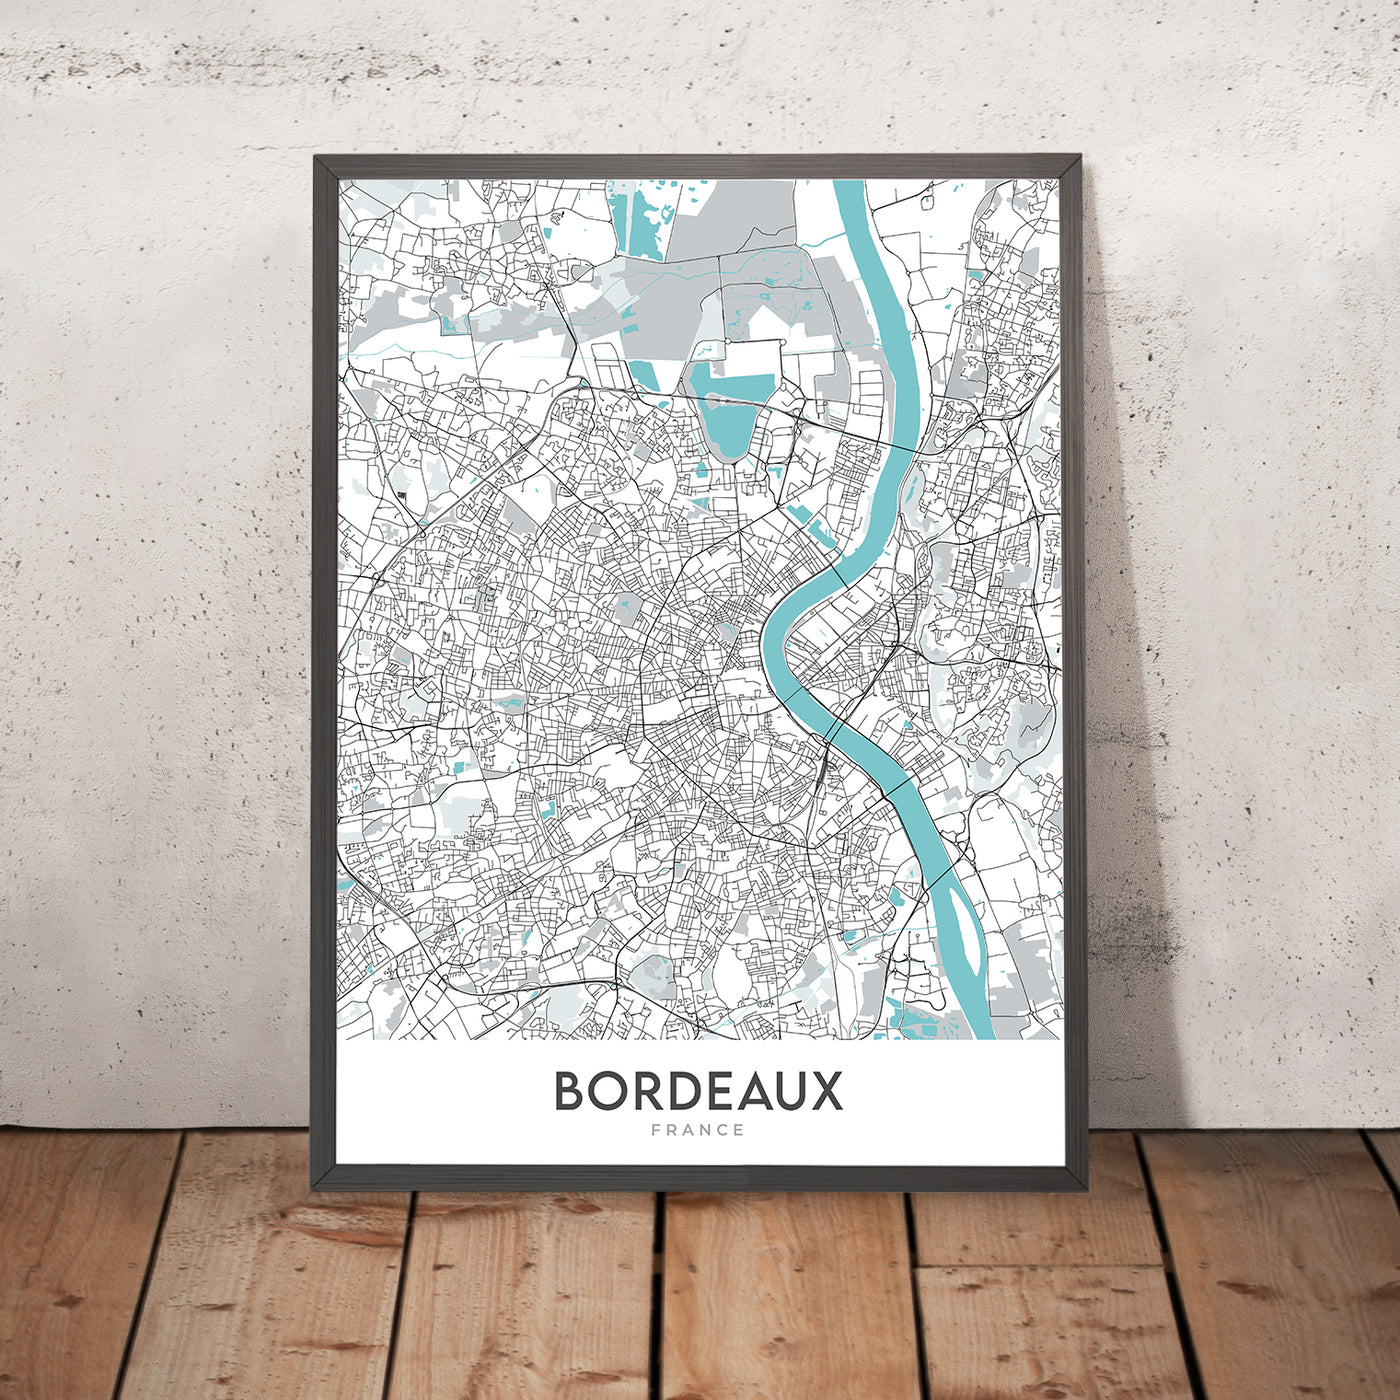 Moderner Stadtplan von Bordeaux, Frankreich: Saint-Pierre, Cathédrale Saint-André, Grand Théâtre, Jardin Public, Pont de Pierre